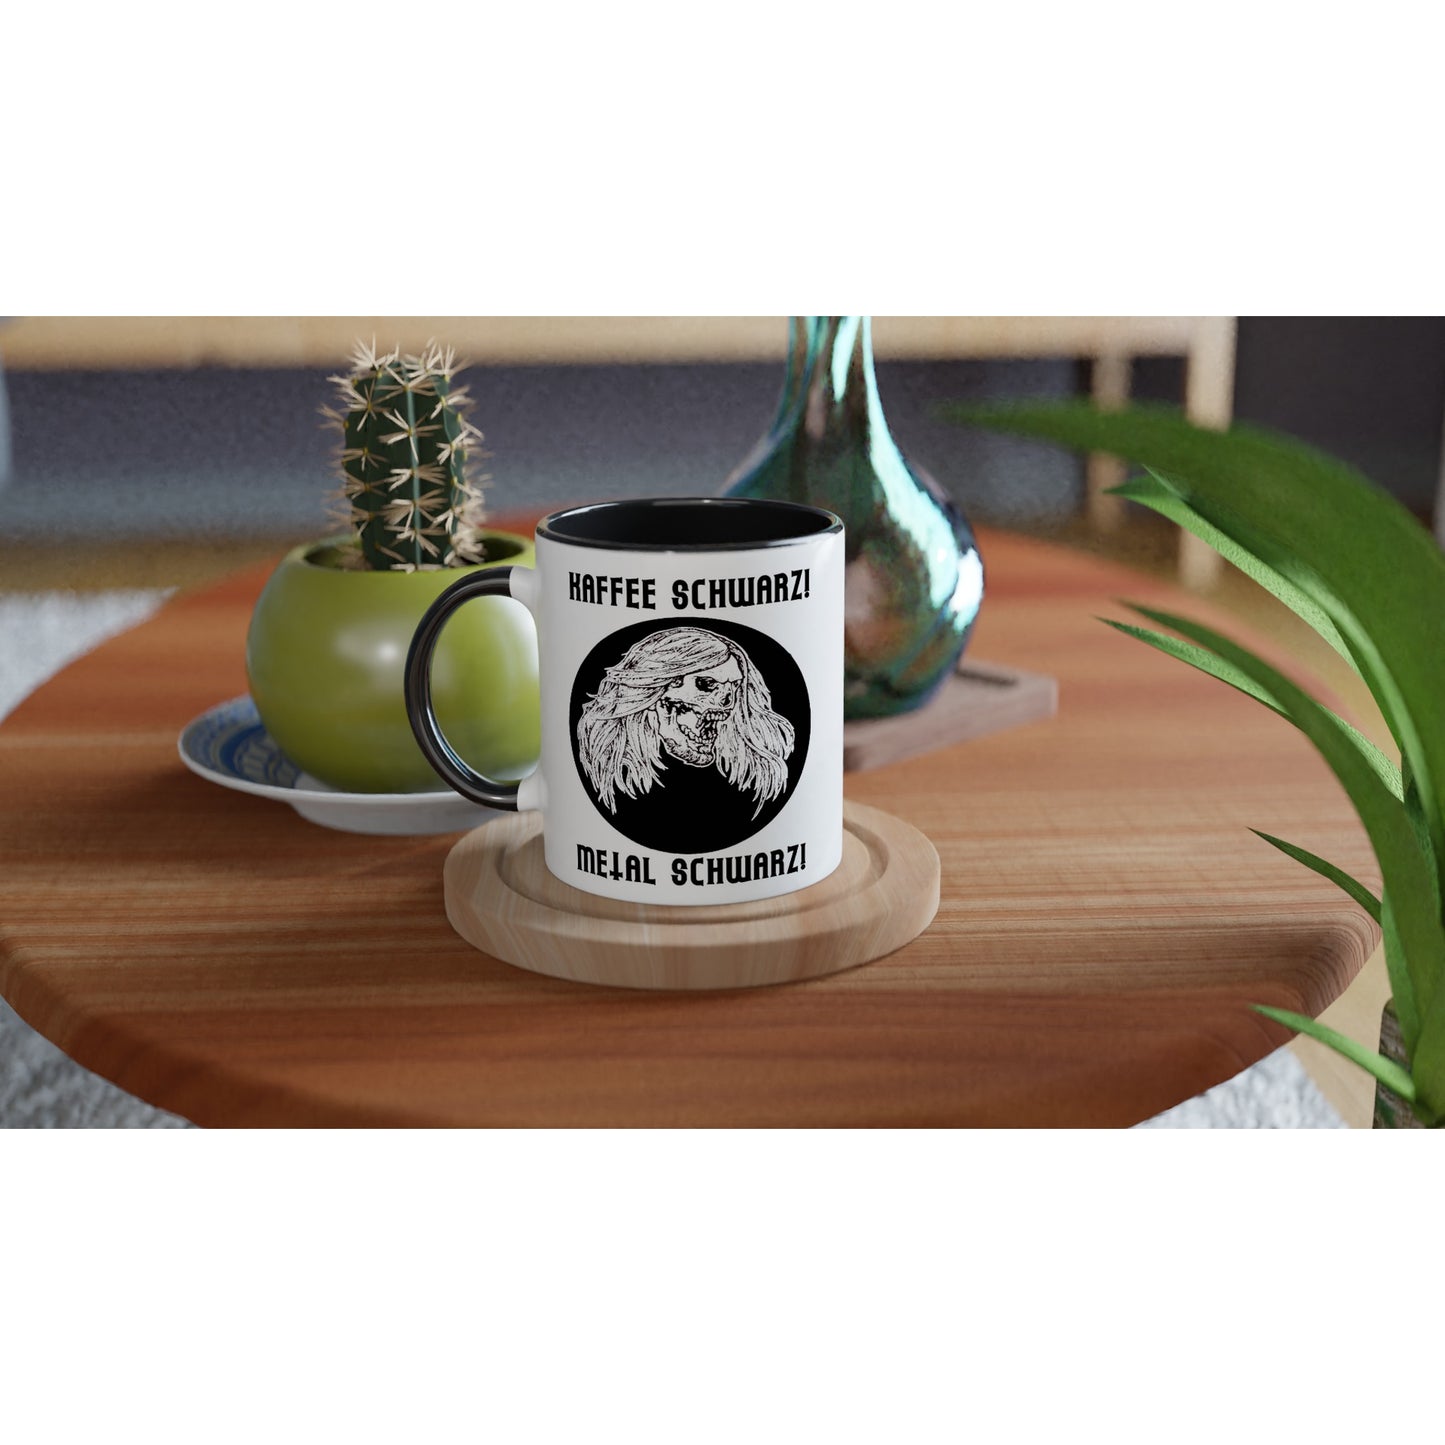 Eine von der Kunst inspirierte Micha-El Goehre - offizielle Fan-Tasse: Kaffee schwarz - Keramik mit einem schwarz-weißen Bild eines Hundes, perfekt für Merchandise.